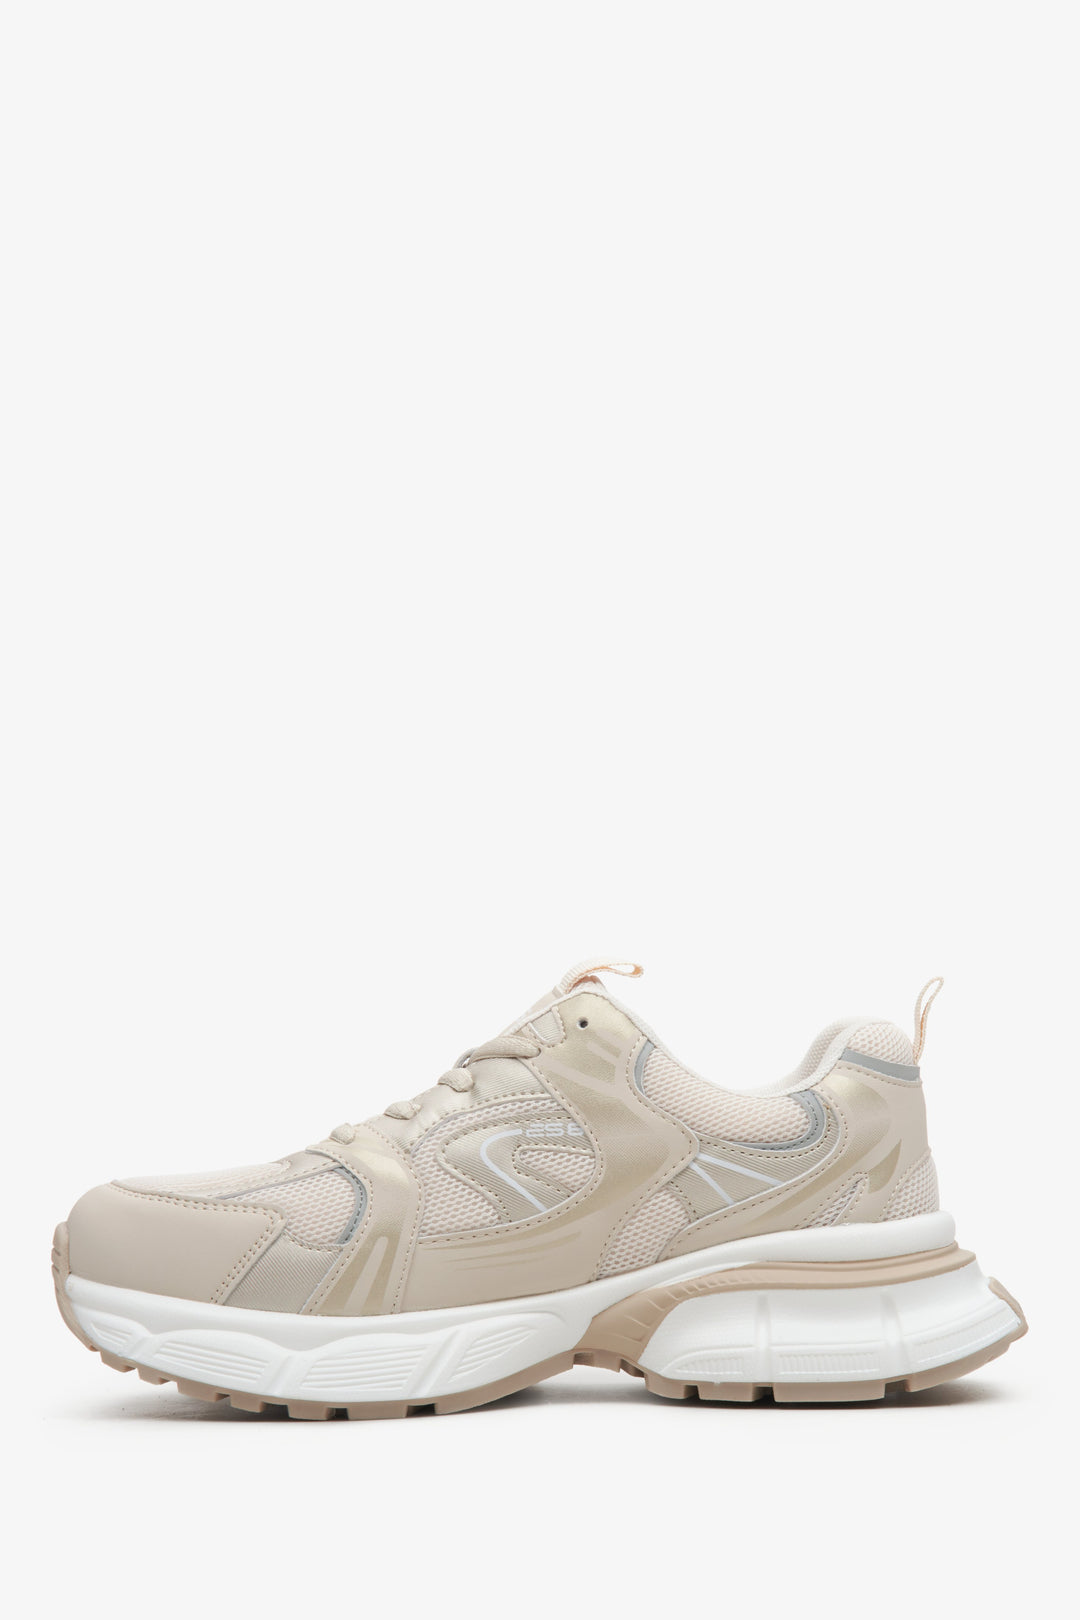 Beżowo-białe sportowe sneakersy damskie ES 8 - profil buta.